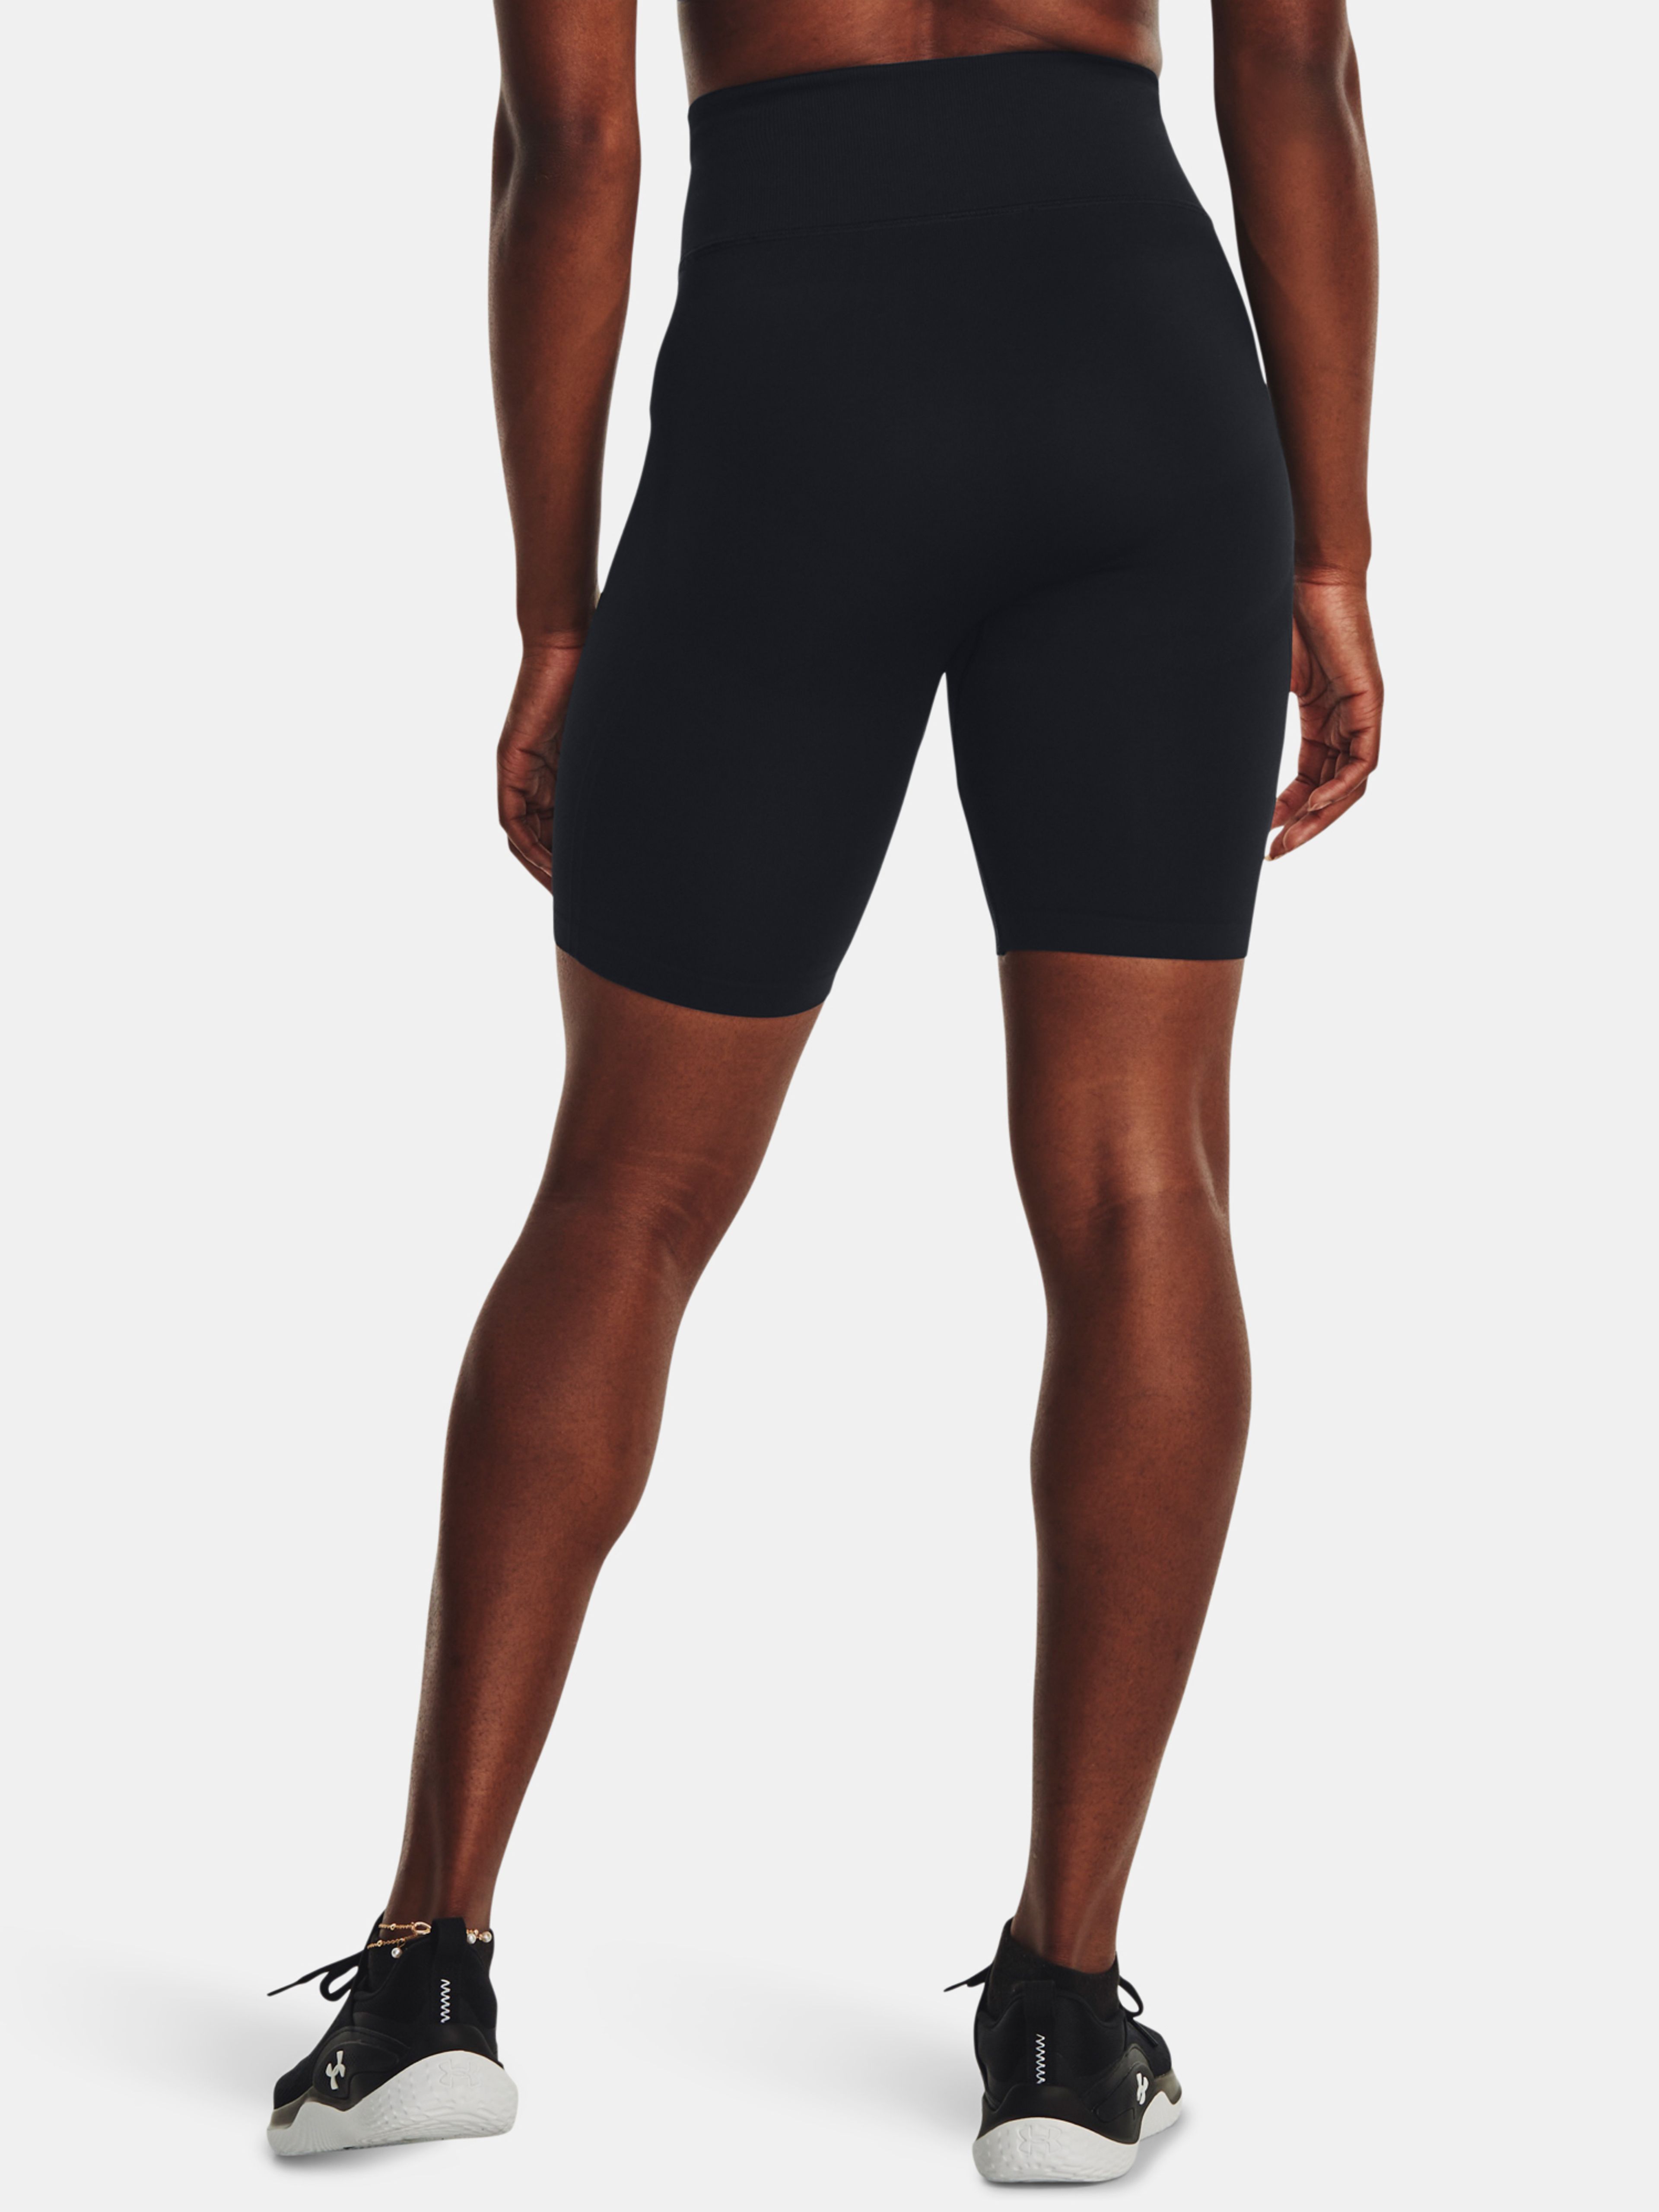  Train Seamless Short-PPL - women's shorts - UNDER ARMOUR -  41.05 € - outdoorové oblečení a vybavení shop